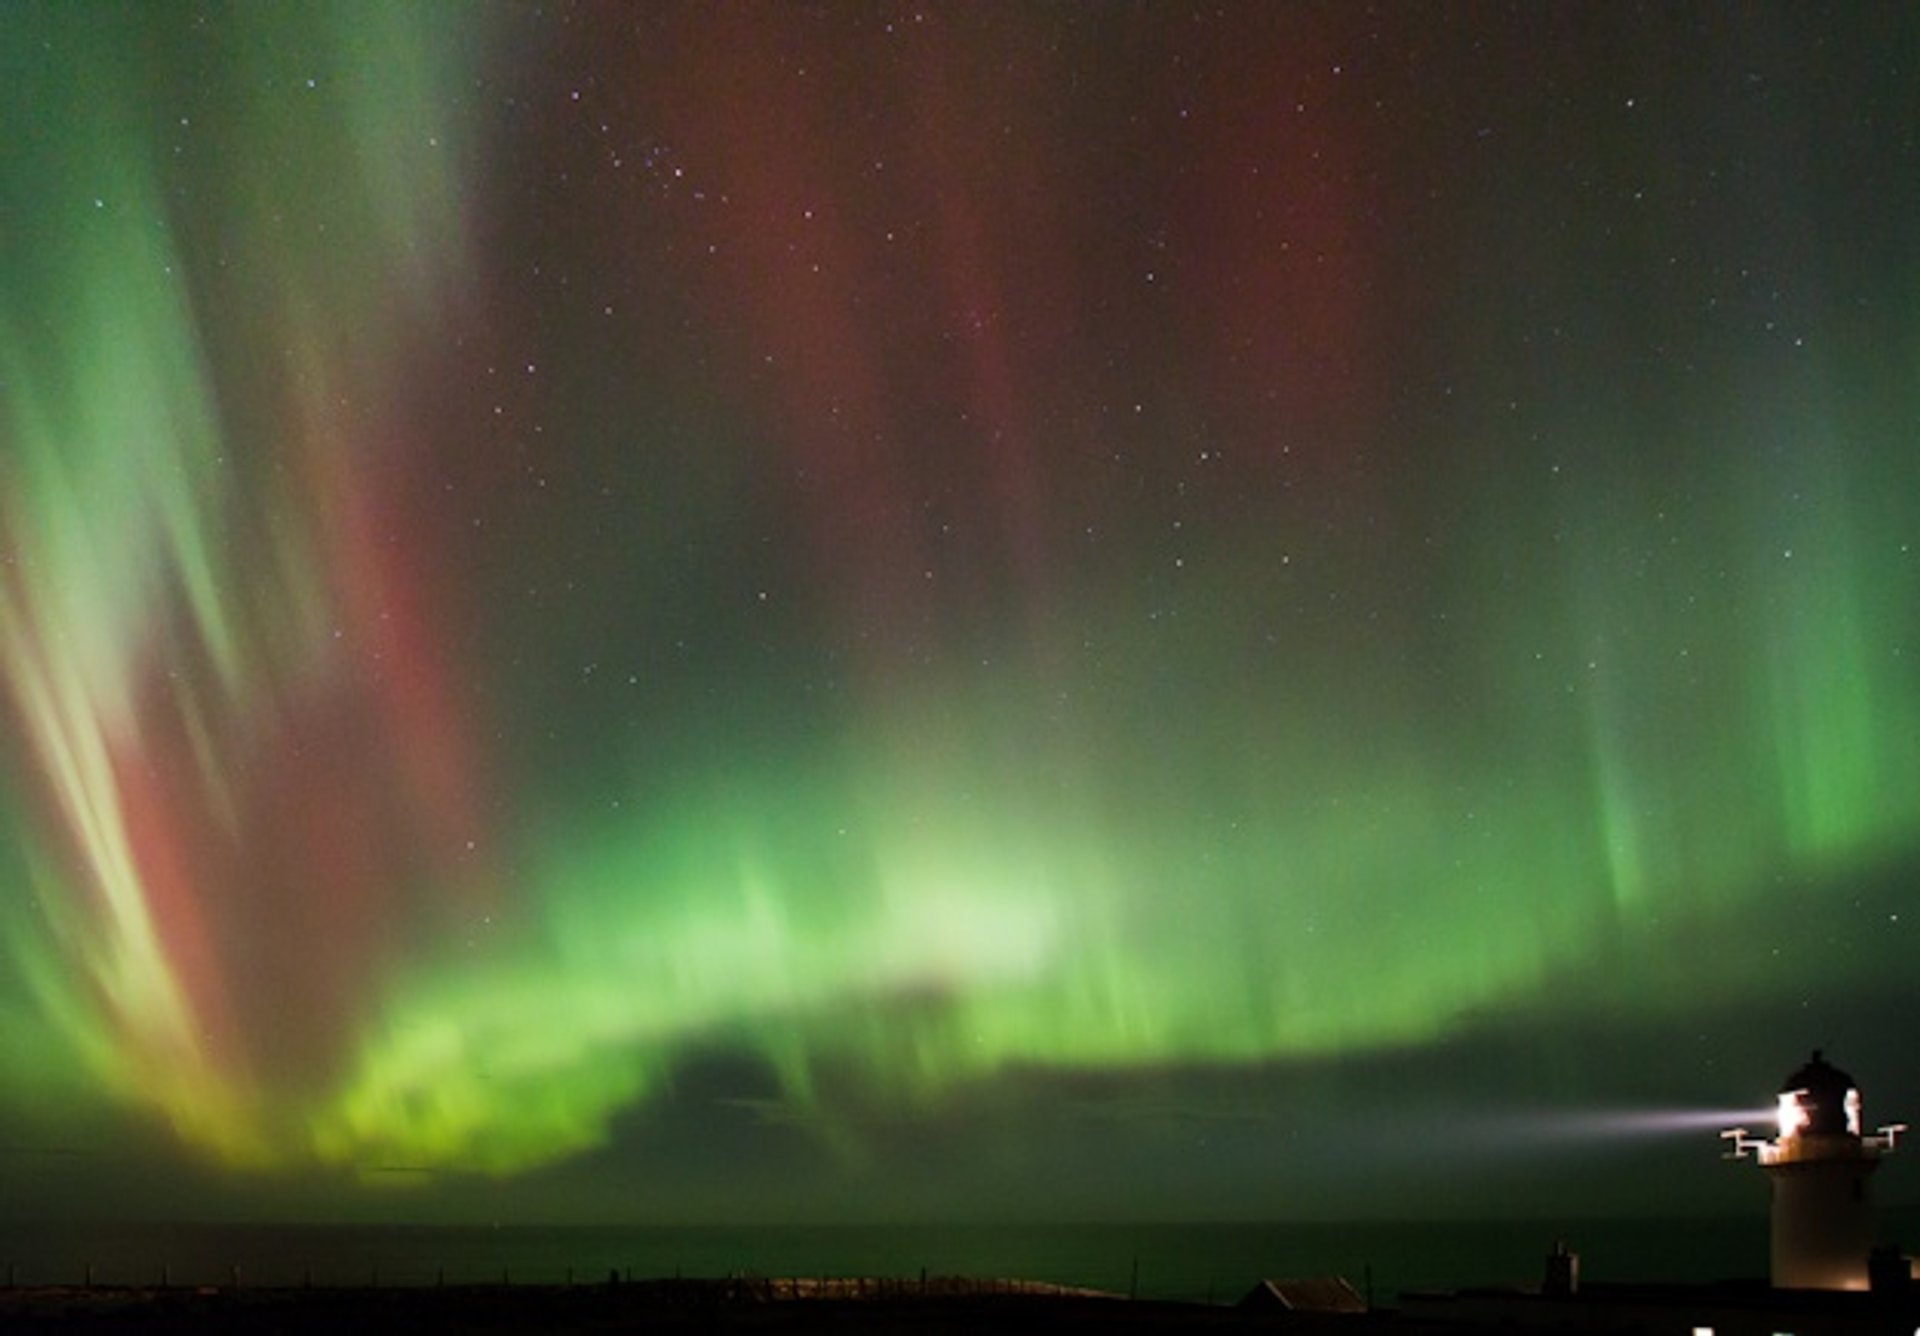 Aurora boreale o luci del nord